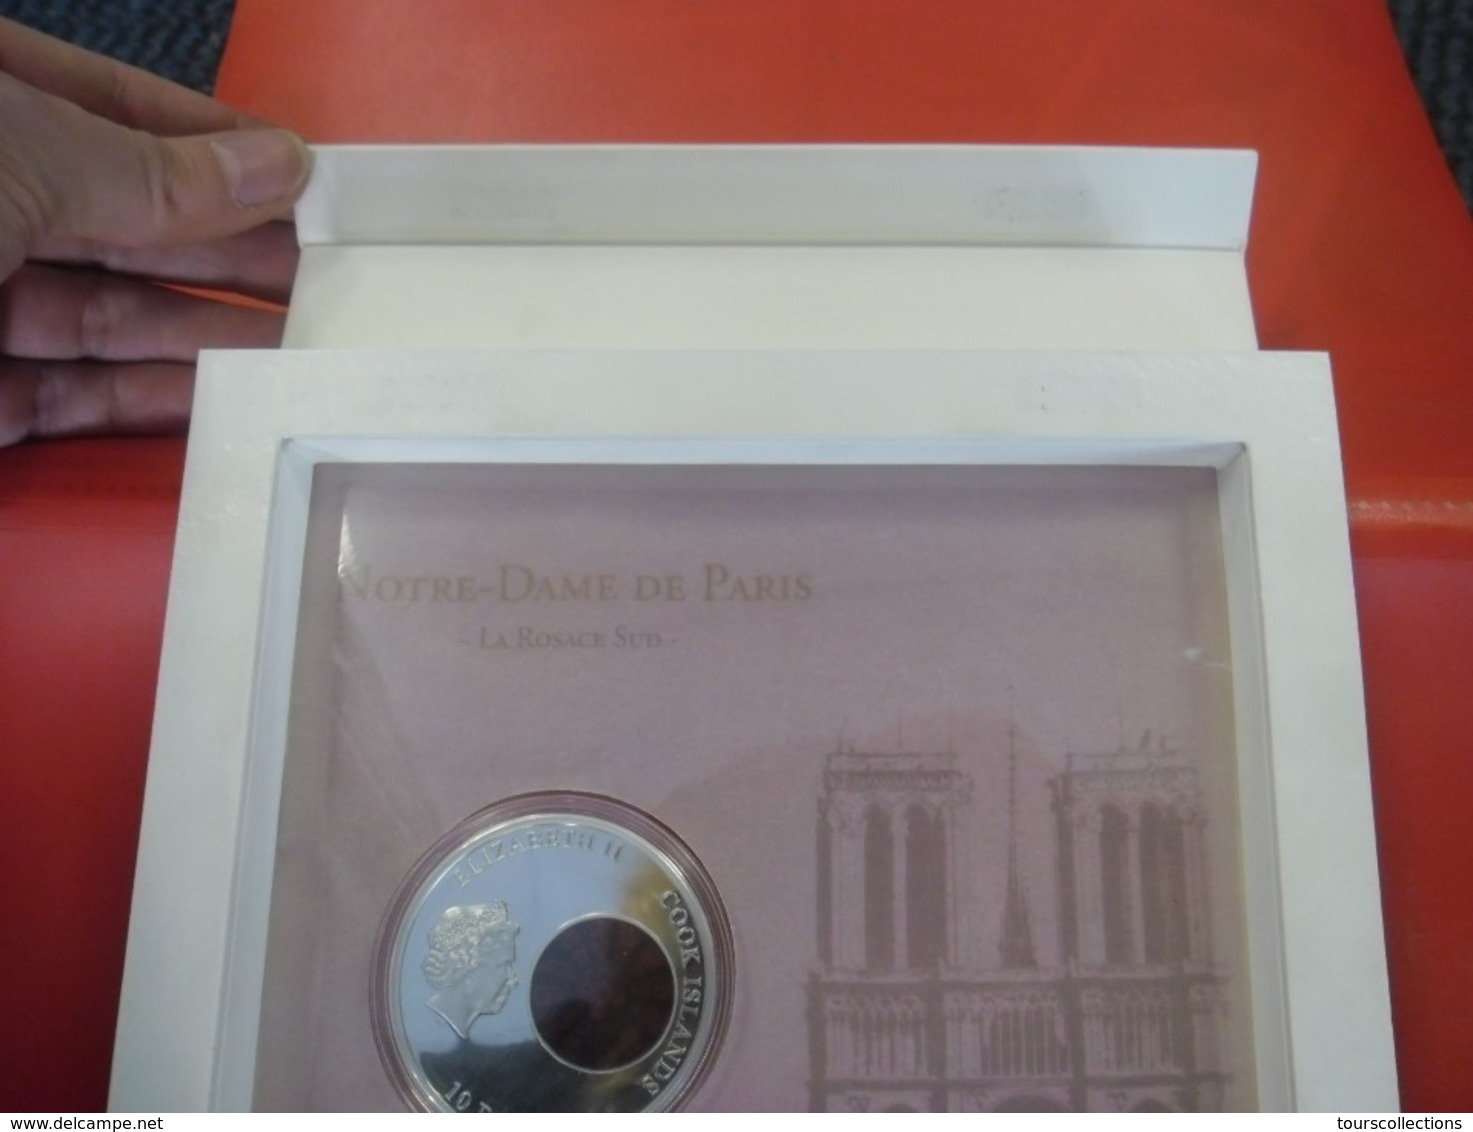 EXCEPTIONNEL !! 850 ans NOTRE DAME de PARIS 850 exemplaires Belle épreuve 2013 avec vitrail inséré monnaie argent 50 gr